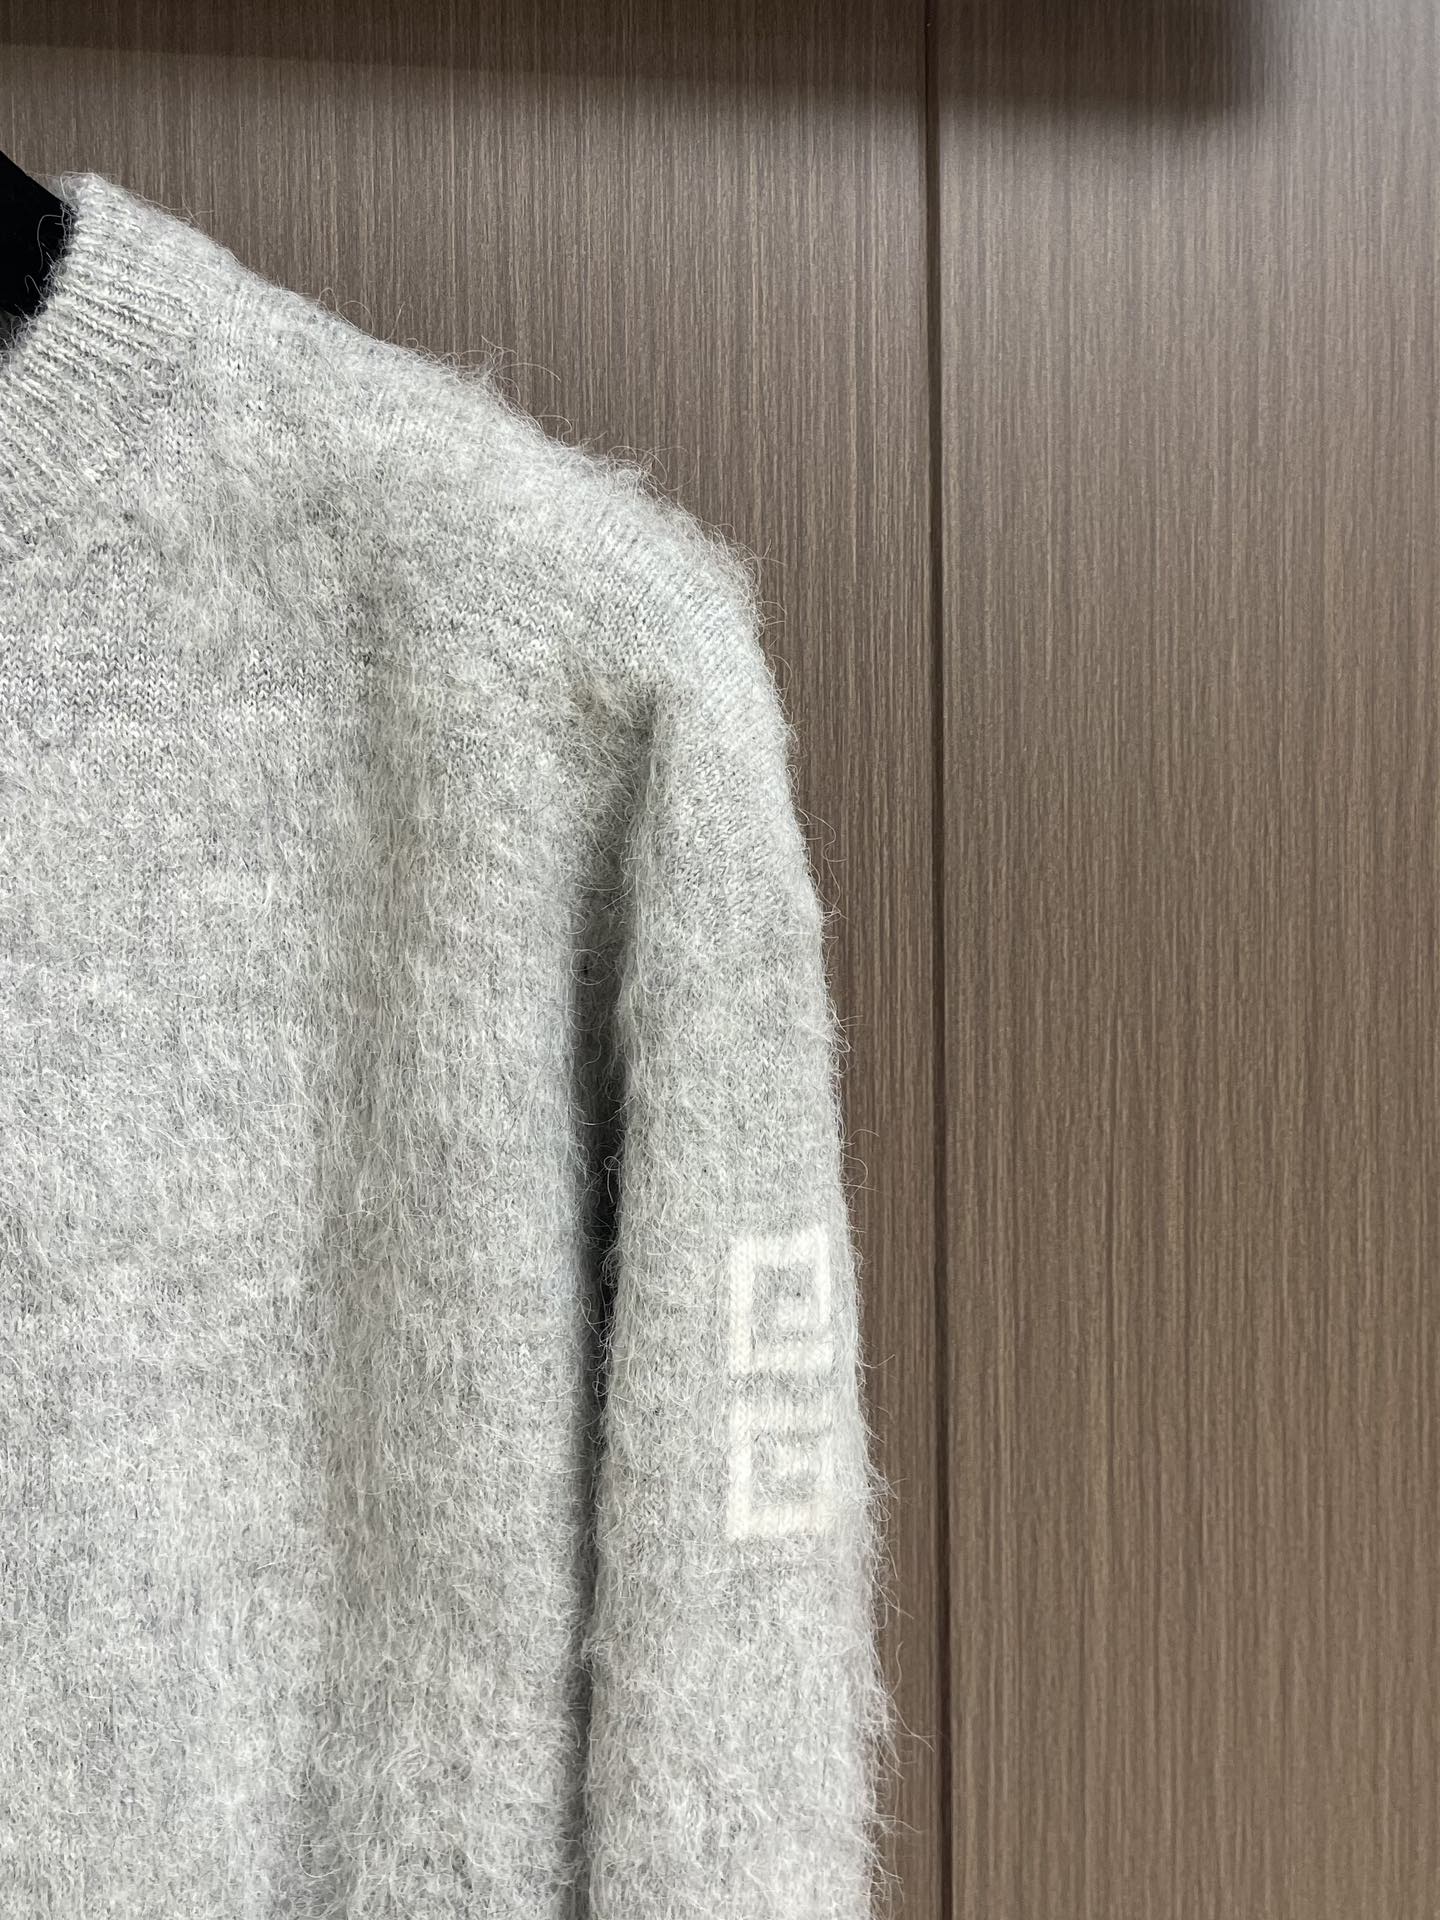 限定販売 最高品質 ジバンシィ ニット激安通販 セーター トップス 暖かい 柔らかい シンプル ウール製 グレイ_4